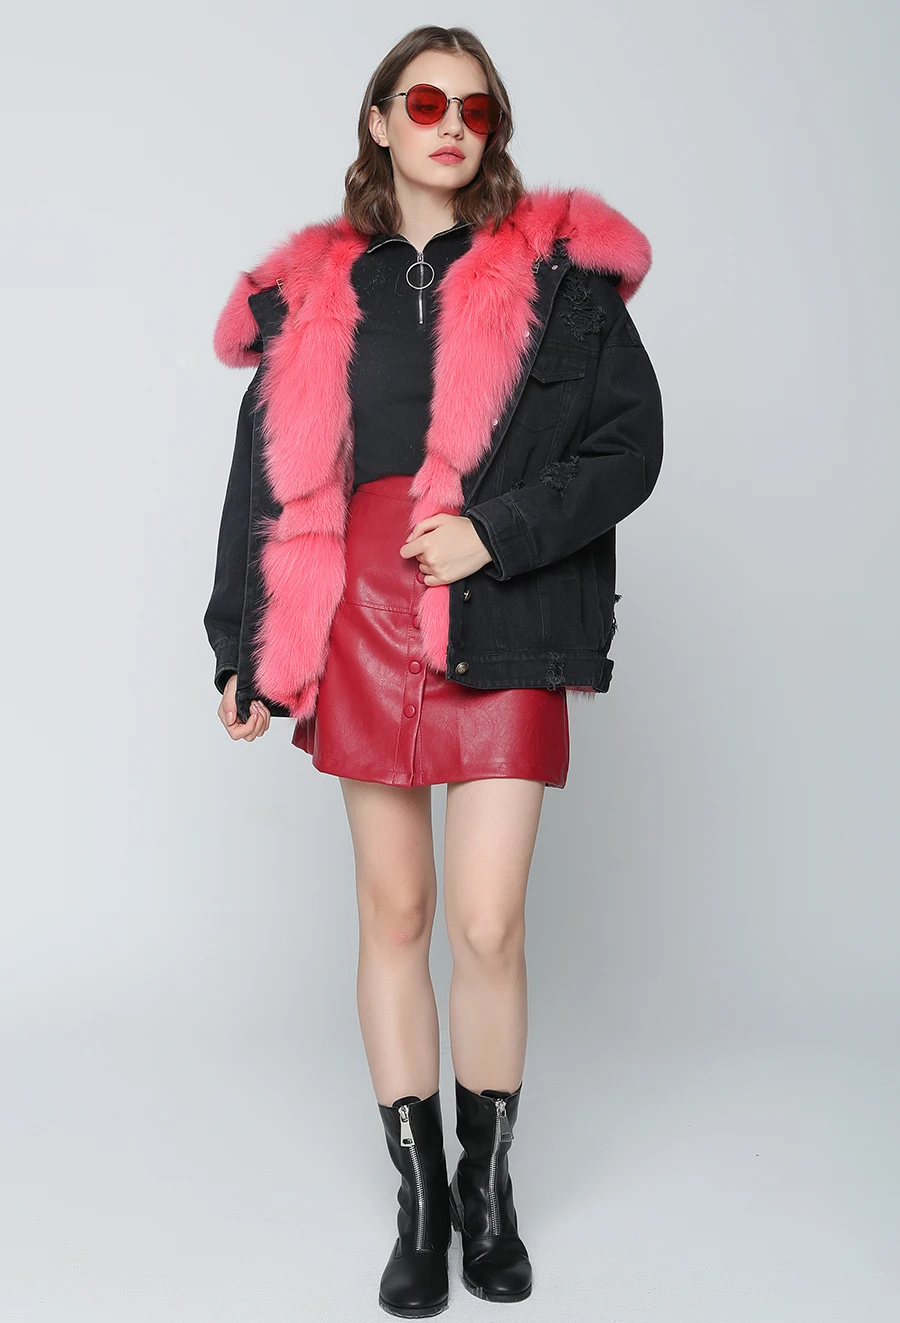 Новая осенне-зимняя куртка, пальто, женская джинсовая куртка с дырками, настоящий большой воротник из меха енота, с капюшоном, натуральный Лисий мех, толстая теплая подкладка